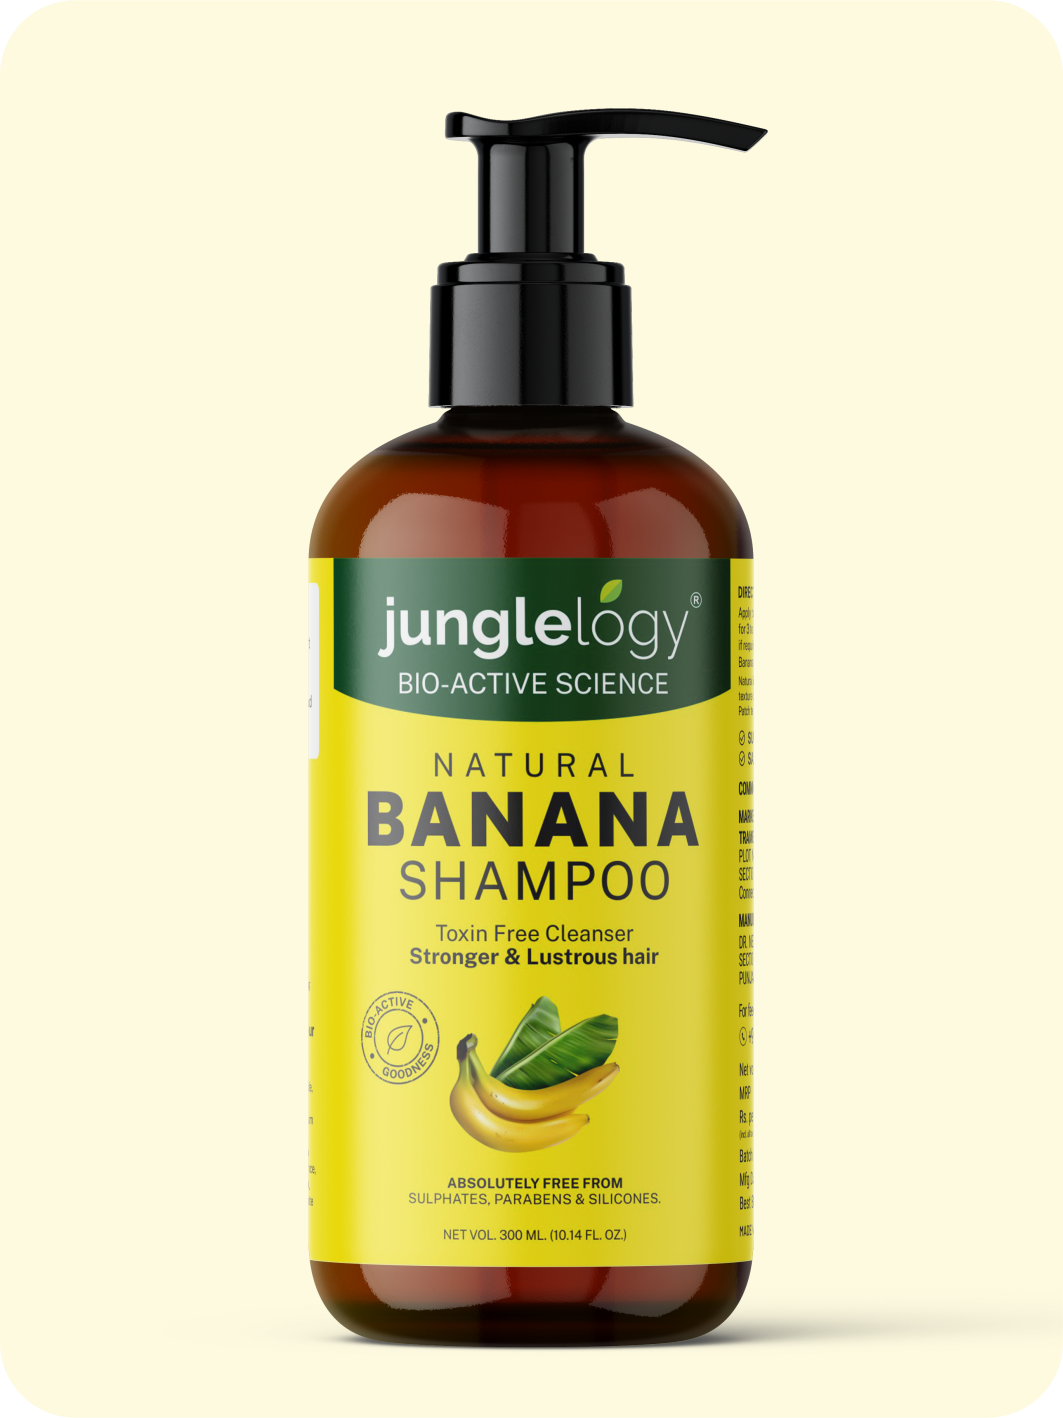 Natural Banana Shampoo